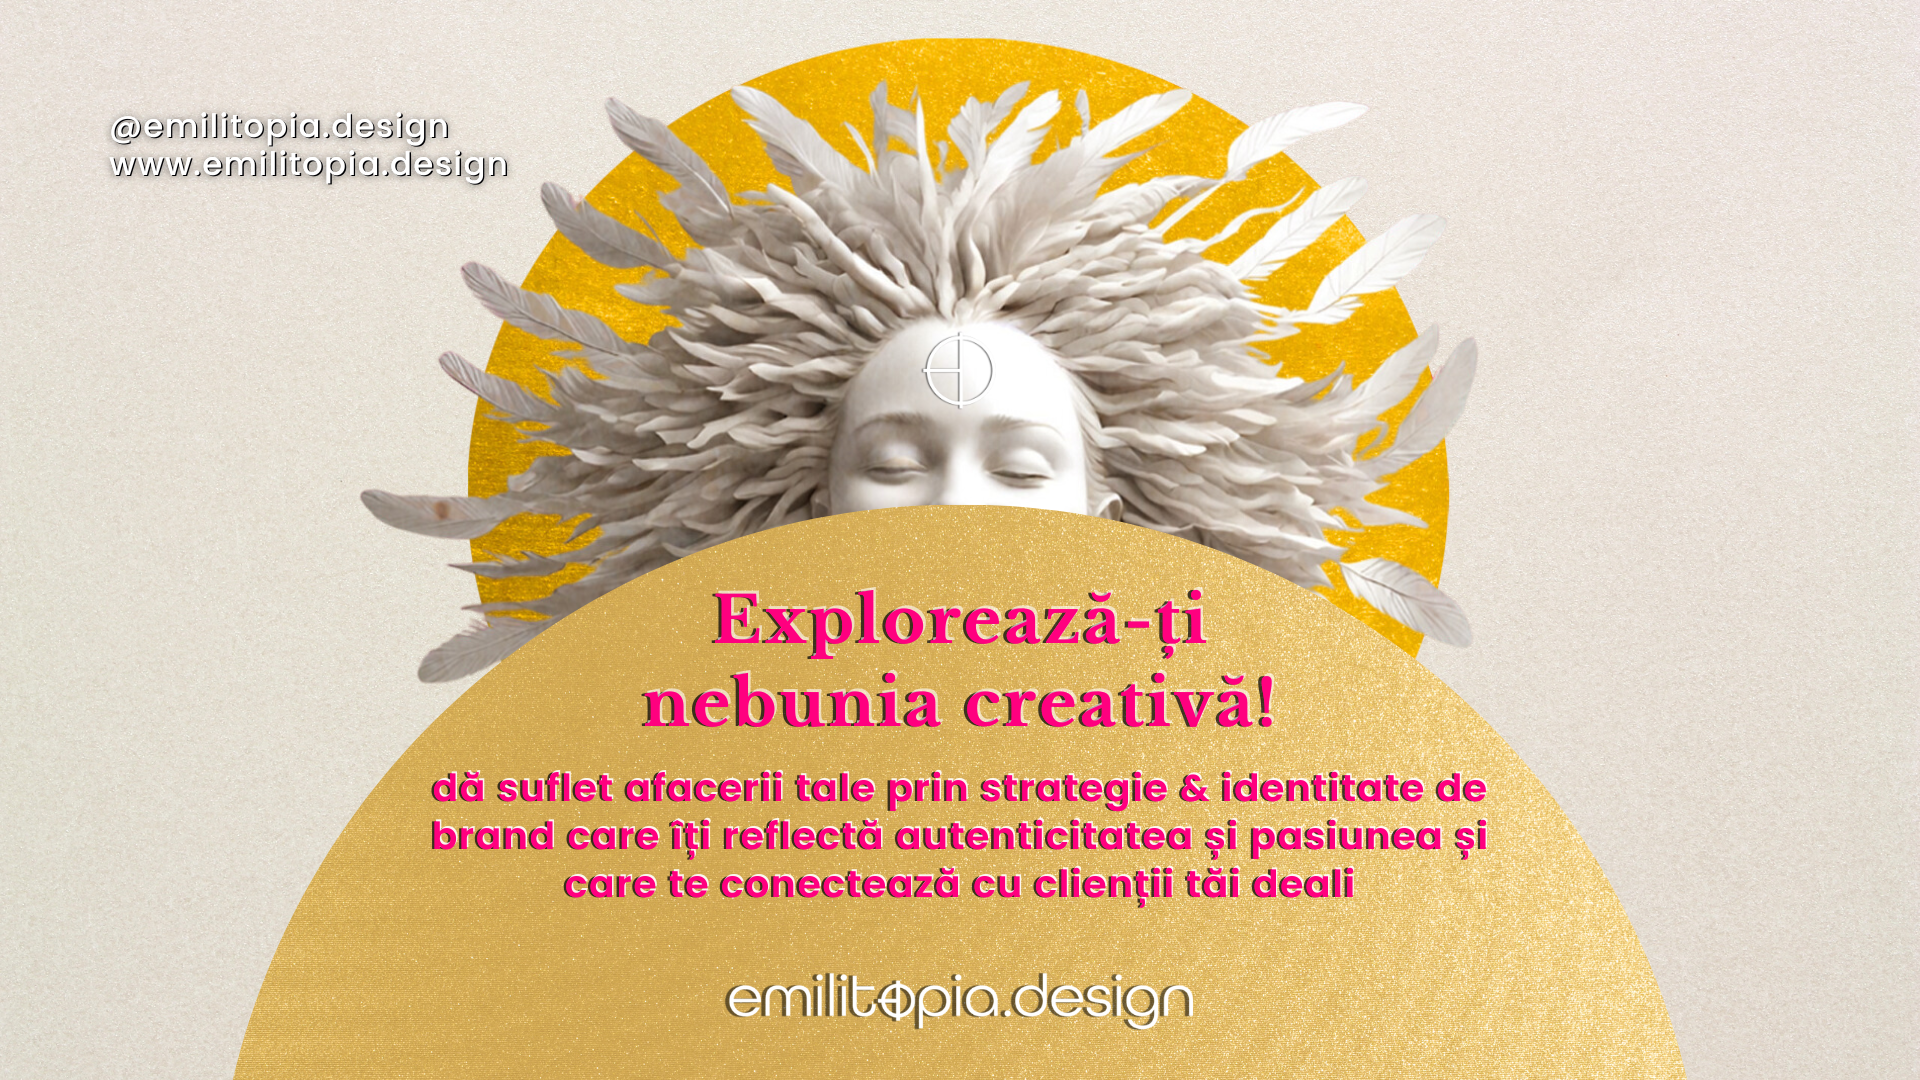 promo Emilitopia Design in comunitatea antreprenoare